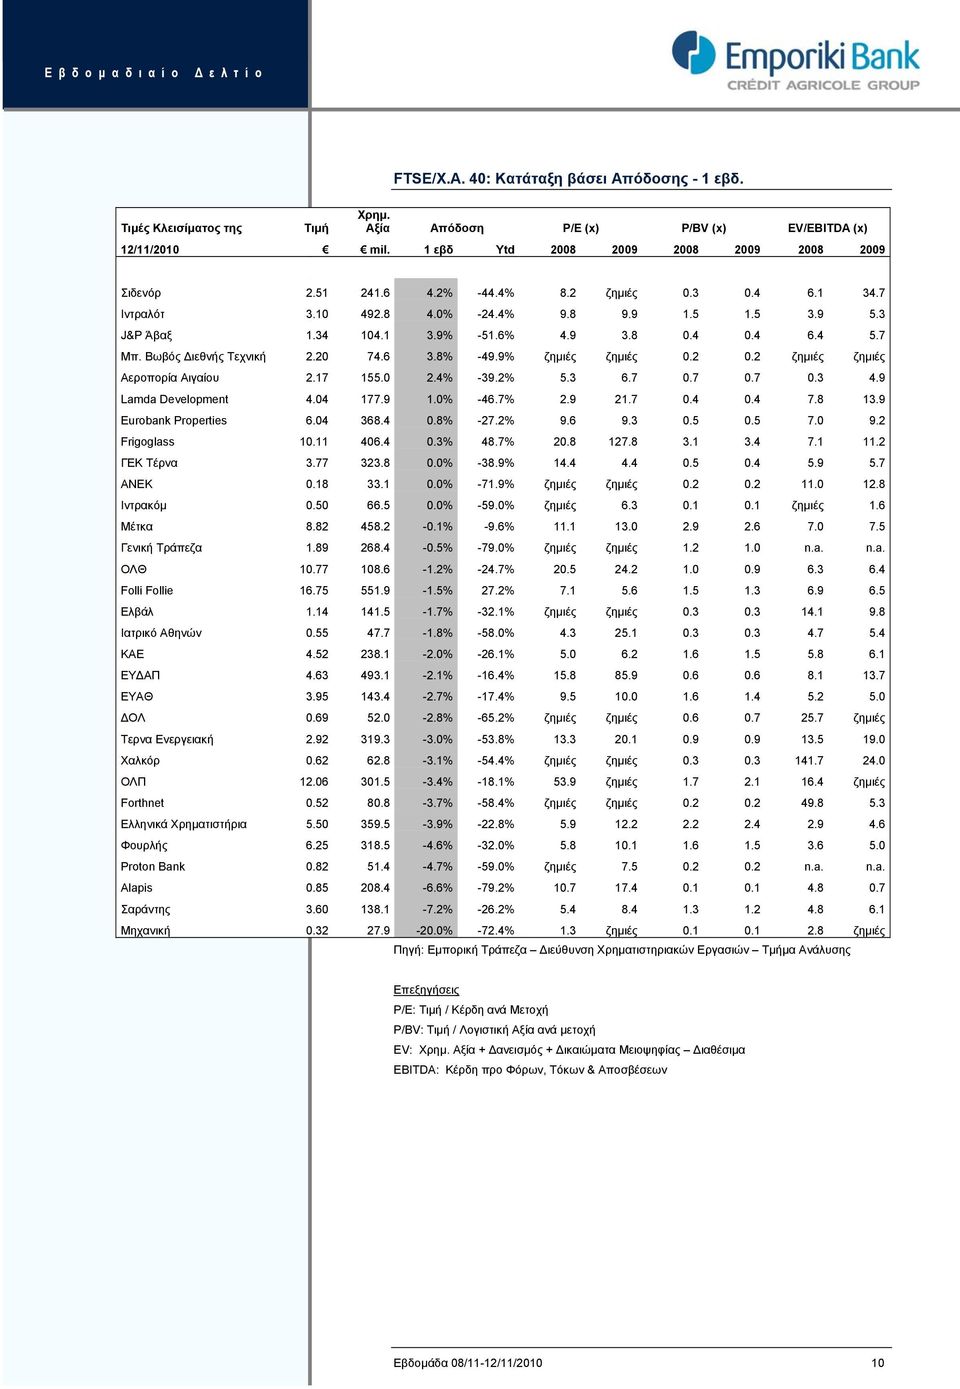 9% ζημιές ζημιές 0.2 0.2 ζημιές ζημιές Αεροπορία Αιγαίου 2.17 155.0 2.4% -39.2% 5.3 6.7 0.7 0.7 0.3 4.9 Lamda Development 4.04 177.9 1.0% -46.7% 2.9 21.7 0.4 0.4 7.8 13.9 Eurobank Properties 6.04 368.